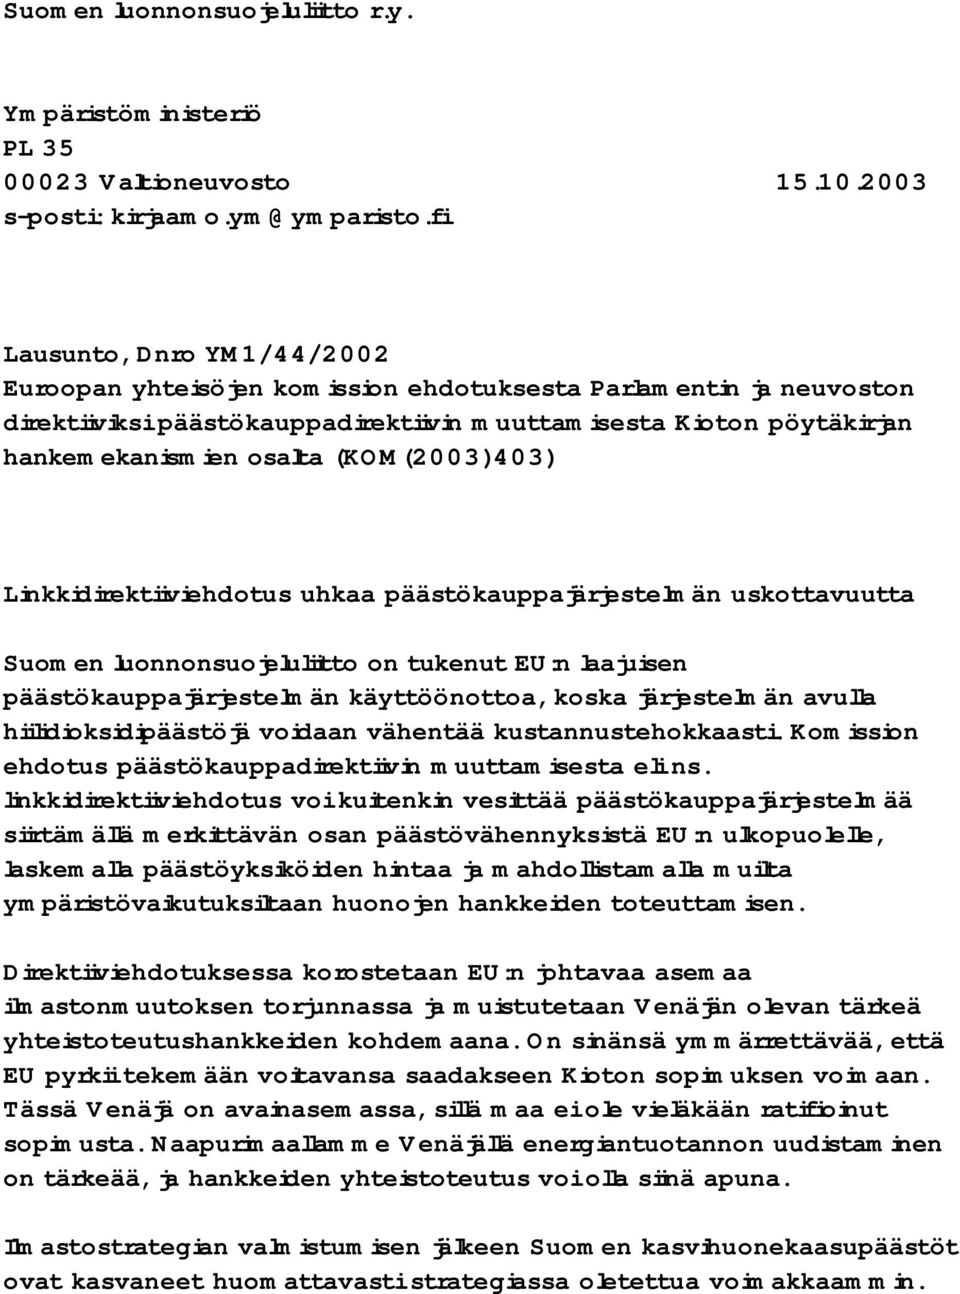 (KOM(2003)403) Linkkidirektiiviehdotus uhkaa päästökauppajärjestelmän uskottavuutta Suomen luonnonsuojeluliitto on tukenut EU:n laajuisen päästökauppajärjestelmän käyttöönottoa, koska järjestelmän